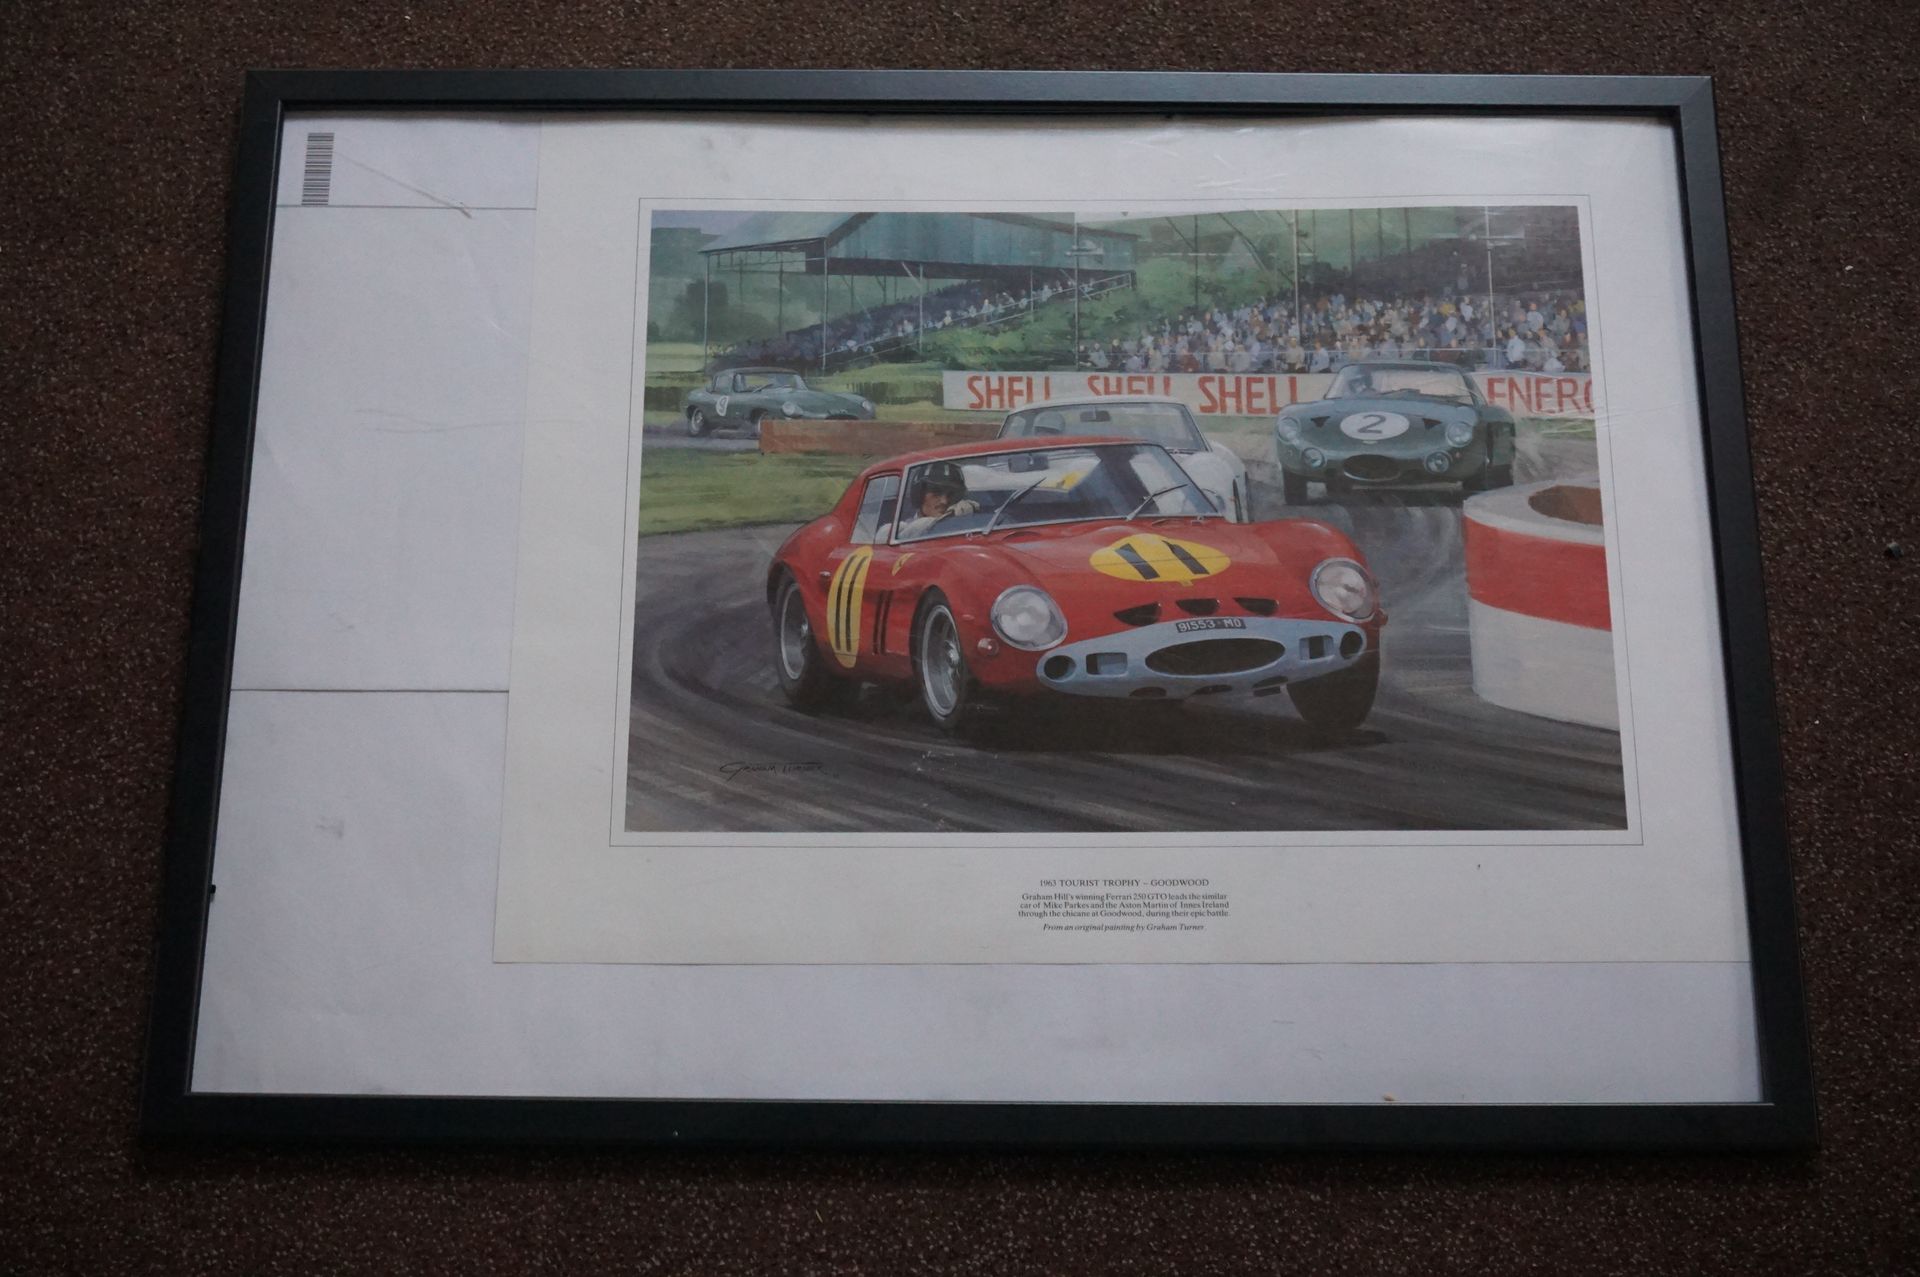 Null 一幅显示格雷厄姆-希尔驾驶法拉利250 GTO的画作的印刷品。"1963年旅游奖杯 - 古德伍德"
有框
73 x 54